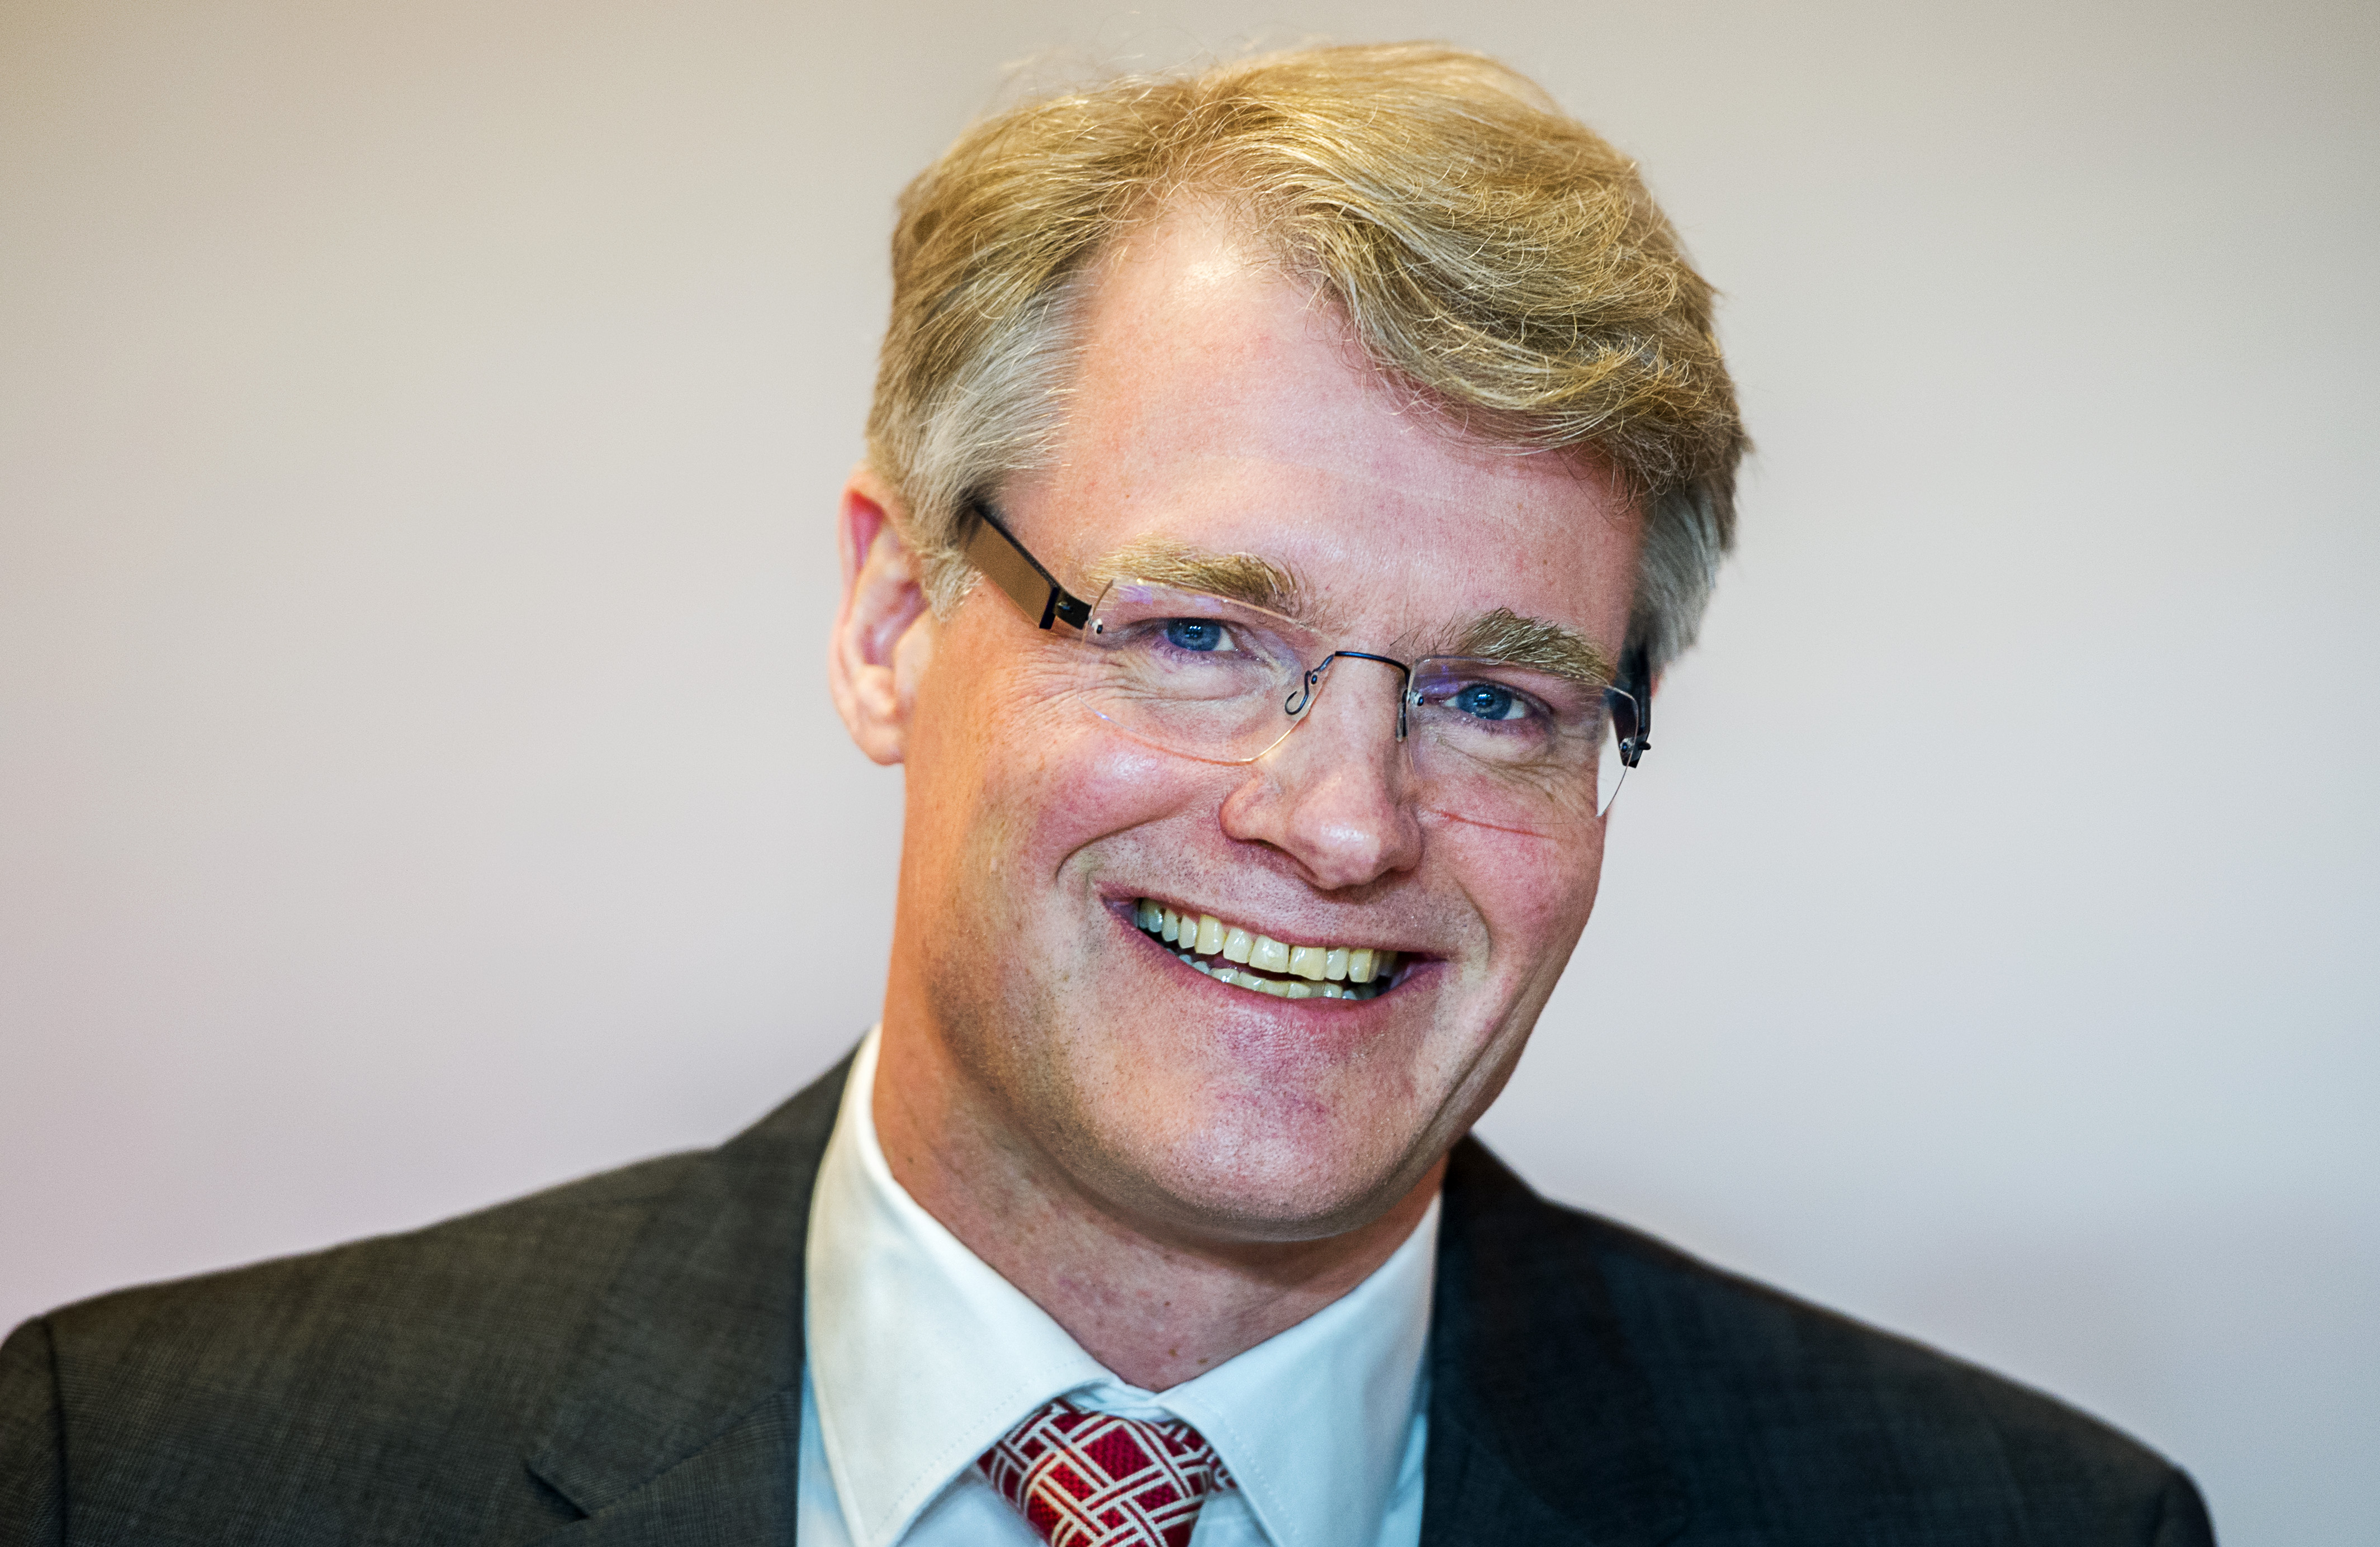 2015-04-08 10:59:29 HOOFDDORP - Financieel directeur Maarten de Vries van TNT tijdens de jaarlijkse aandeelhoudersvergadering van het koeriersbedrijf op het hoofdkantoor in Hoofddorp. ANP REMKO DE WAAL